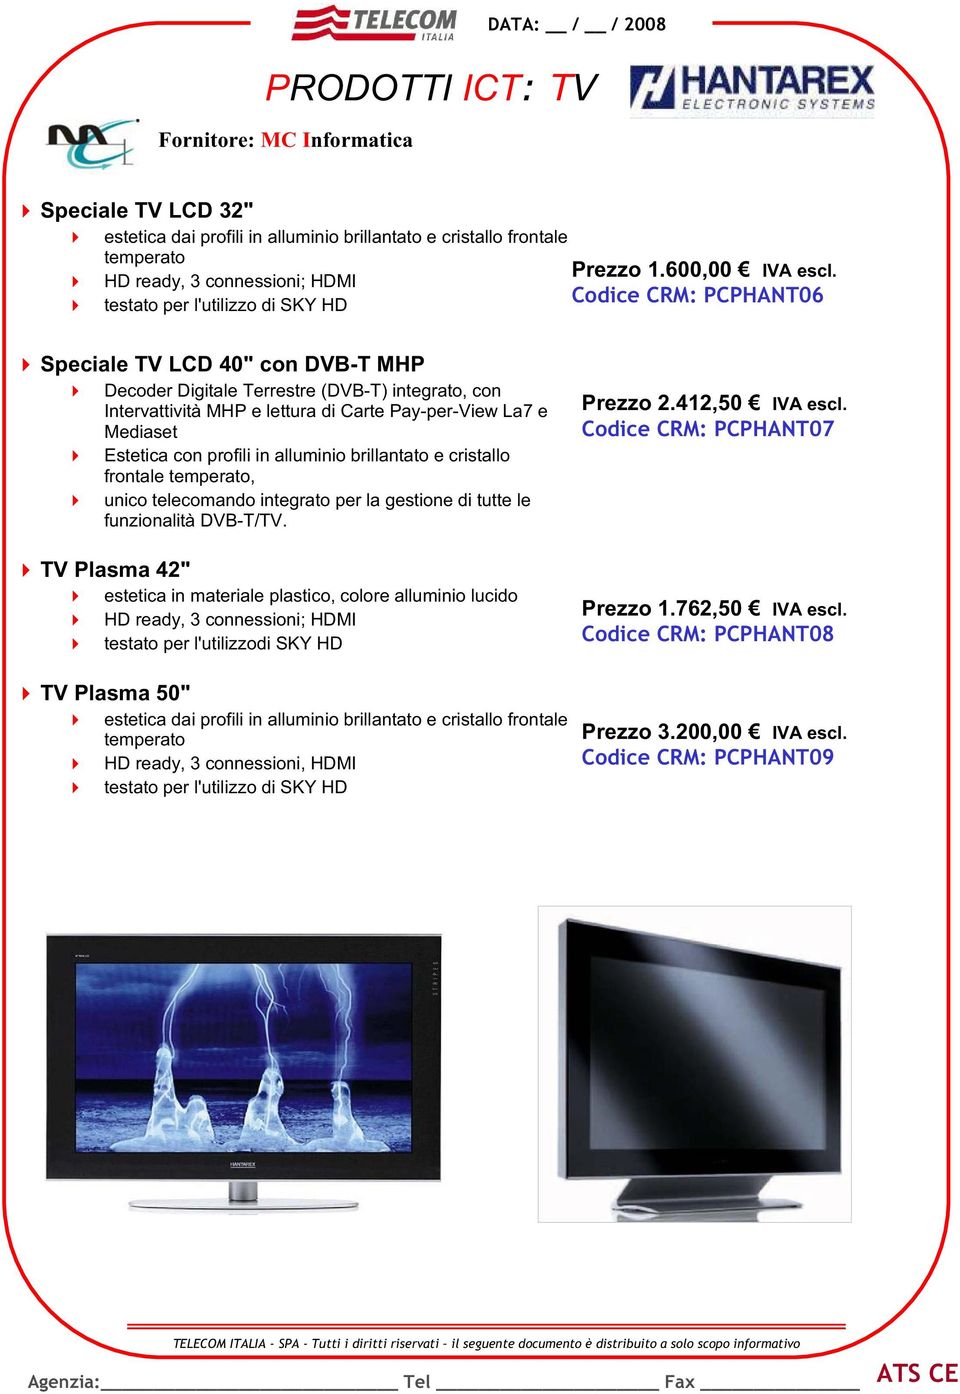 di Carte Pay-per-View La7 e Mediaset Estetica con profili in alluminio brillantato e cristallo frontale temperato, unico telecomando integrato per la gestione di tutte le funzionalità DVB-T/TV.